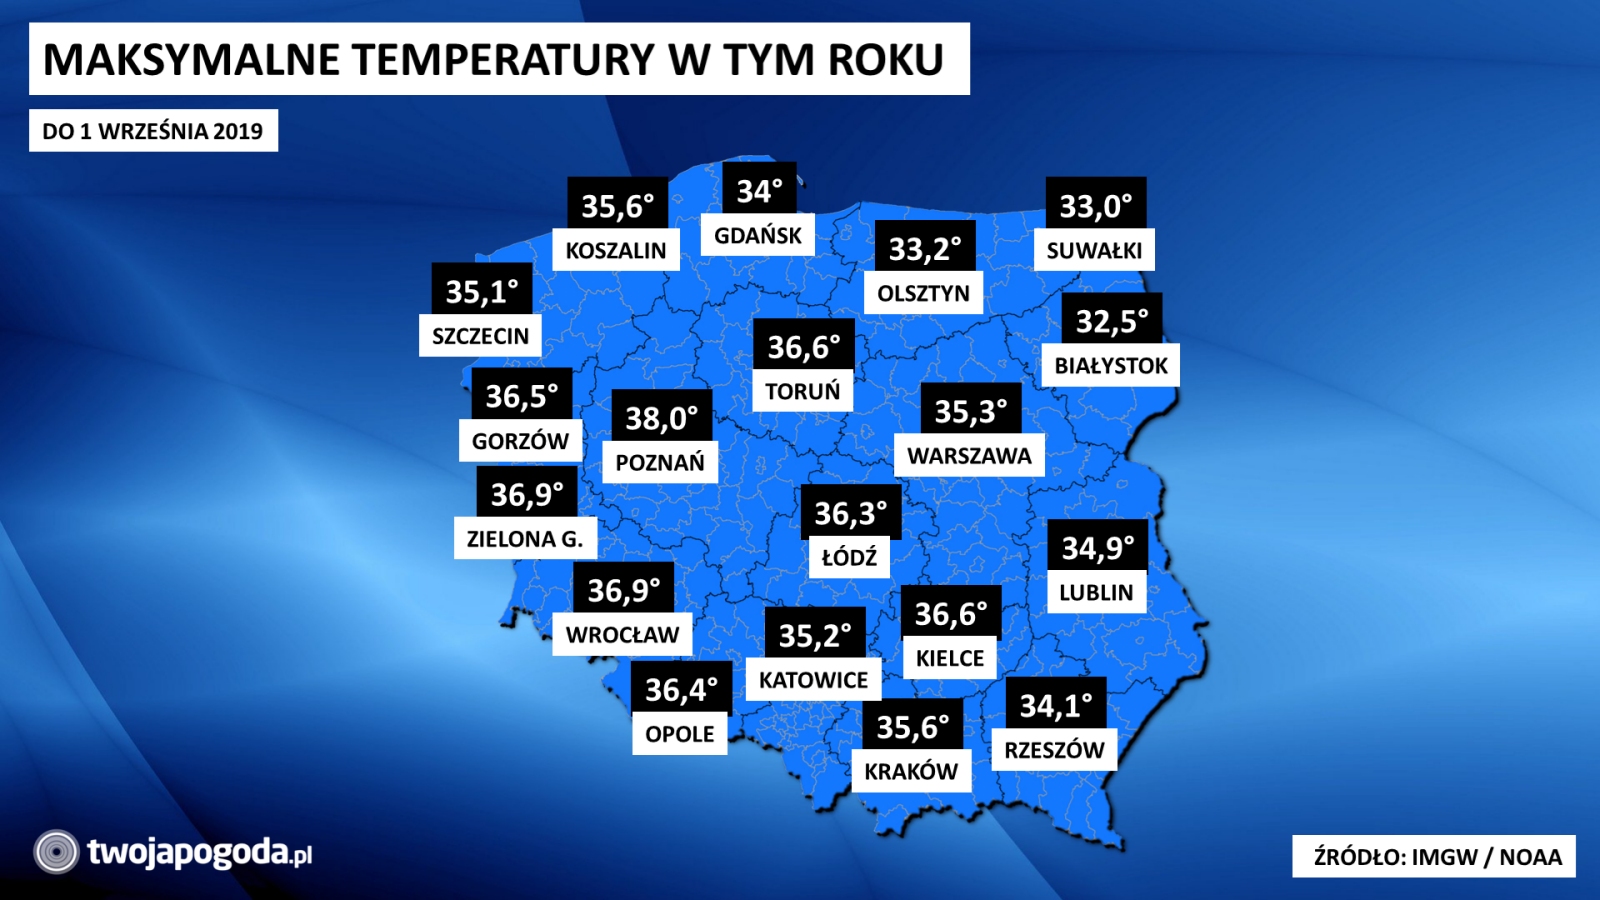 Skonczylo Sie Najgoretsze Lato W Dziejach Polskiej Meteorologii Jednak Nie Wszyscy Sa Zadowoleni Twojapogoda Pl